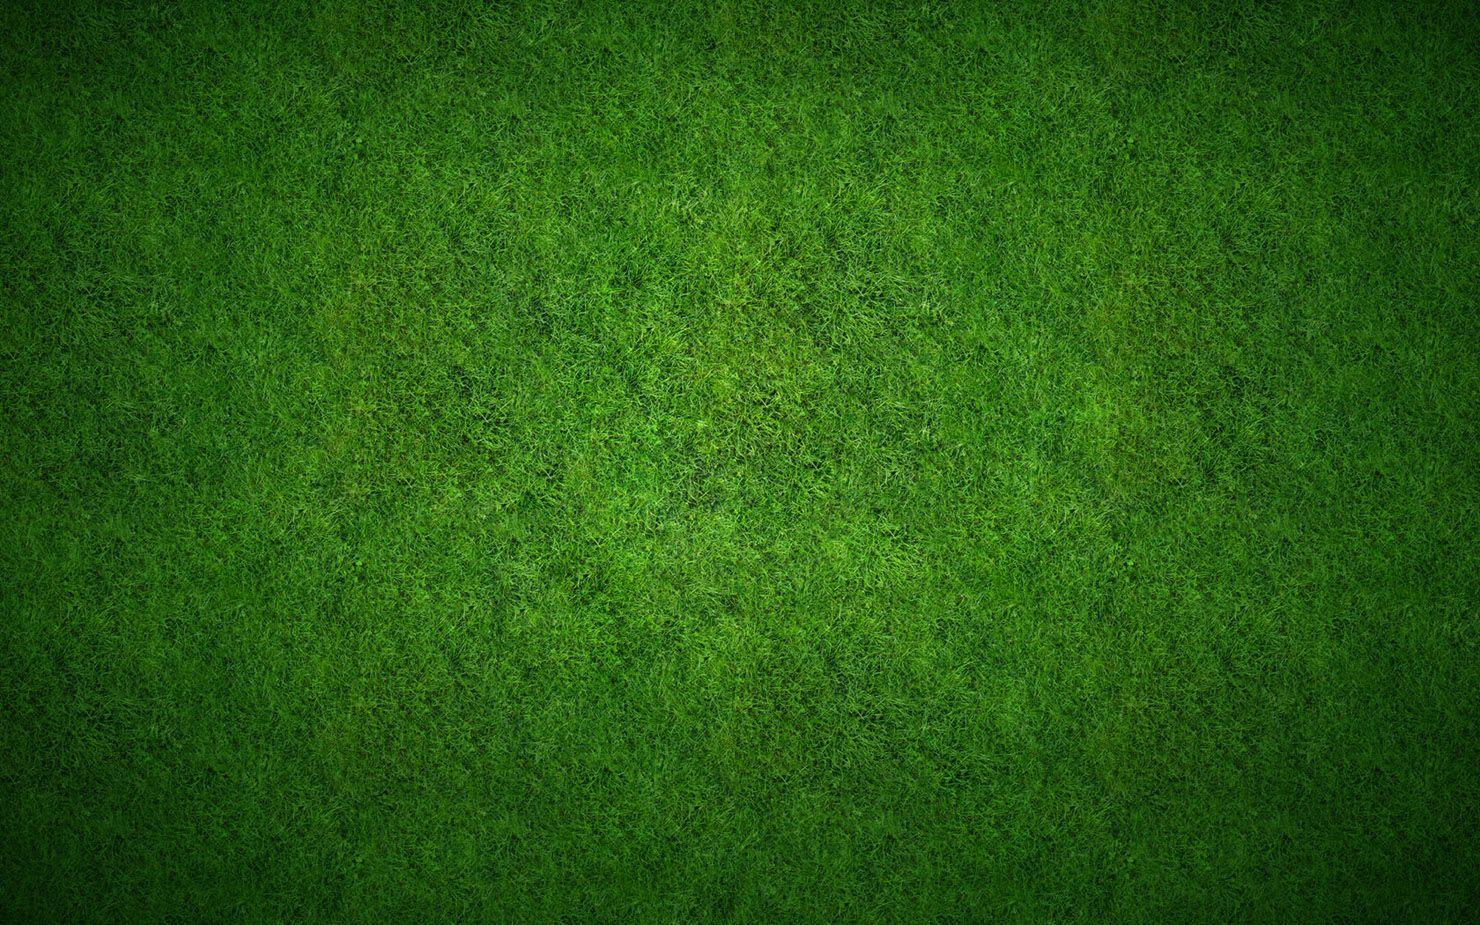 Grass lawn picture 23108 landscape scenery